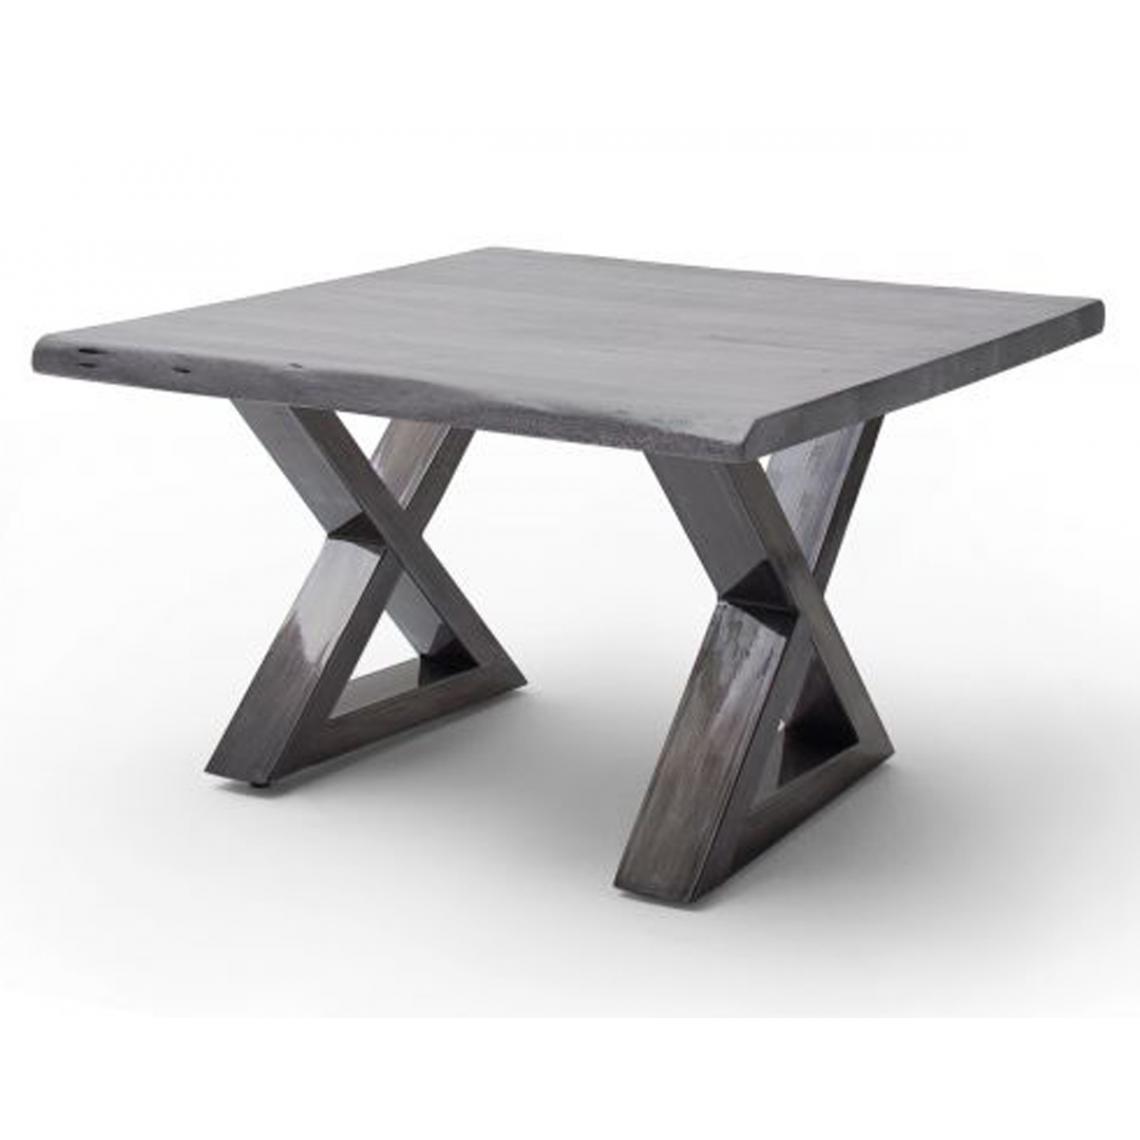 Pegane - Table basse en bois d'acacia massif gris / acier antique - L.75 x H.45 x P.75 cm - Tables basses